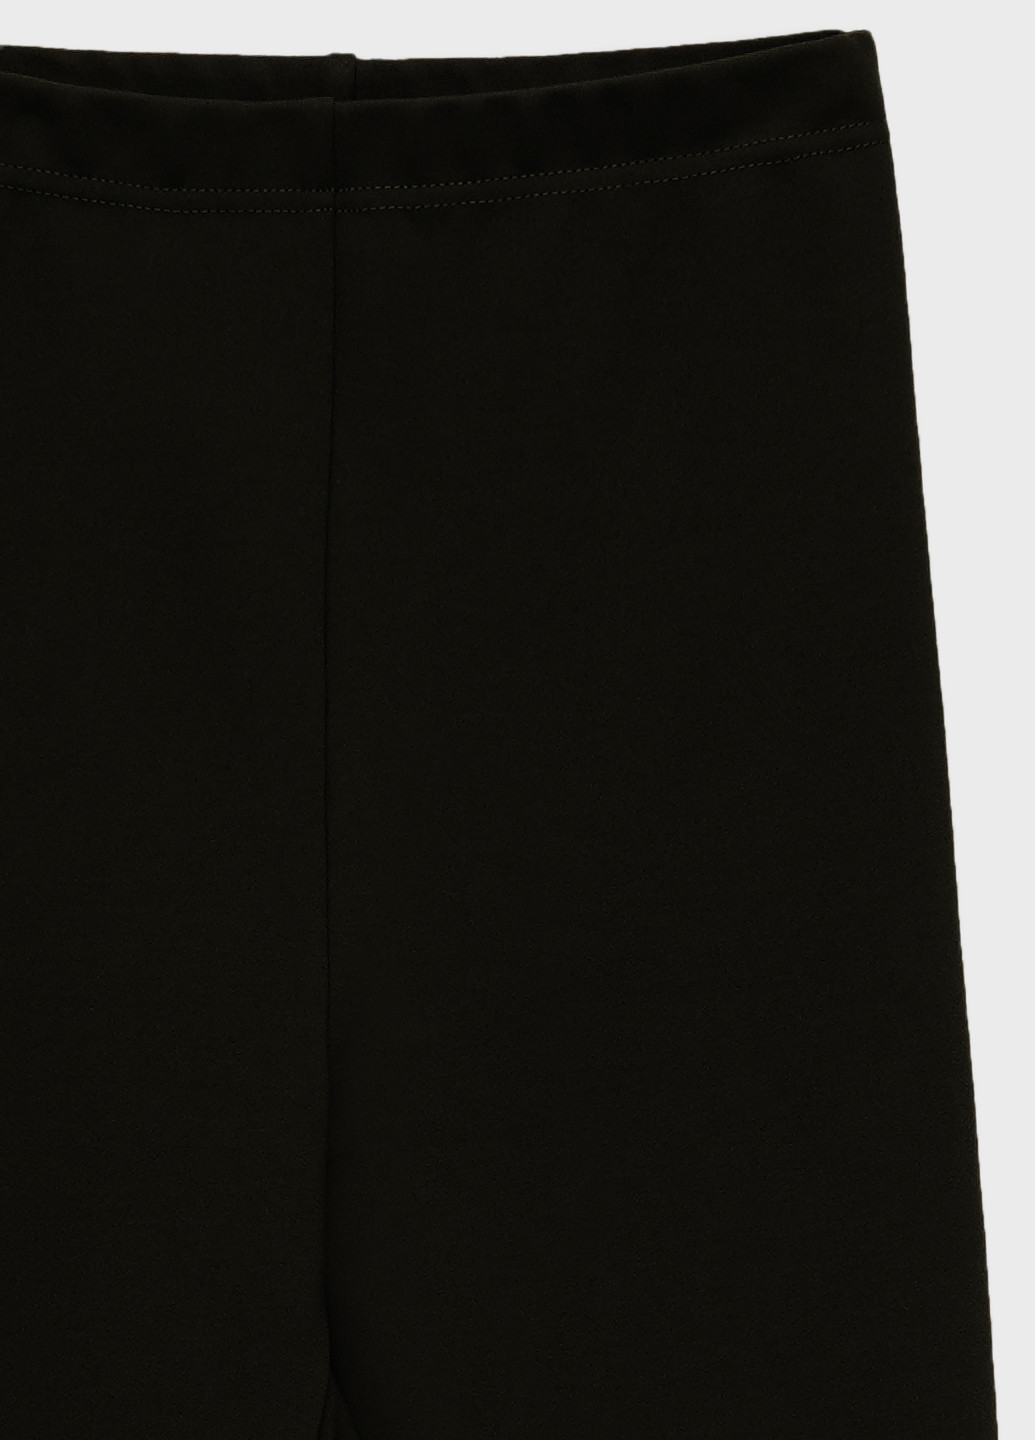 Черные демисезонные леггинсы женские на флисе со штрипками KASTA design